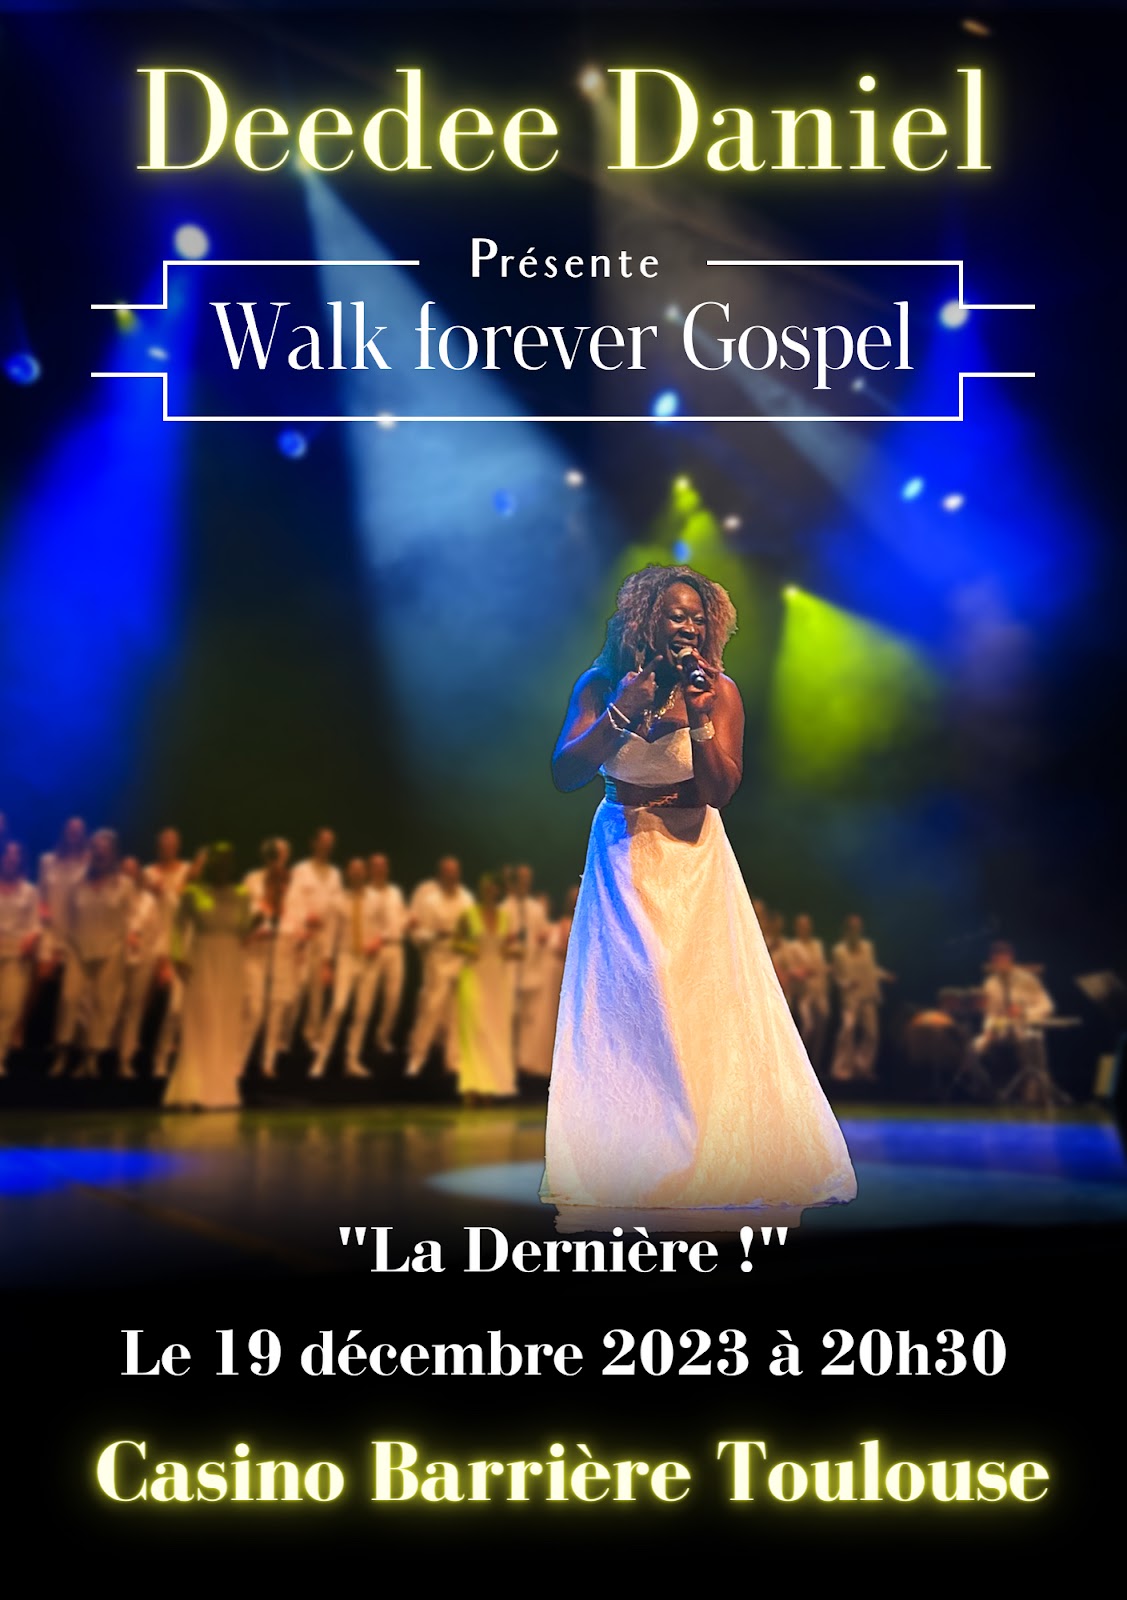 Dee Dee Daniel / Walk Forever Gospel